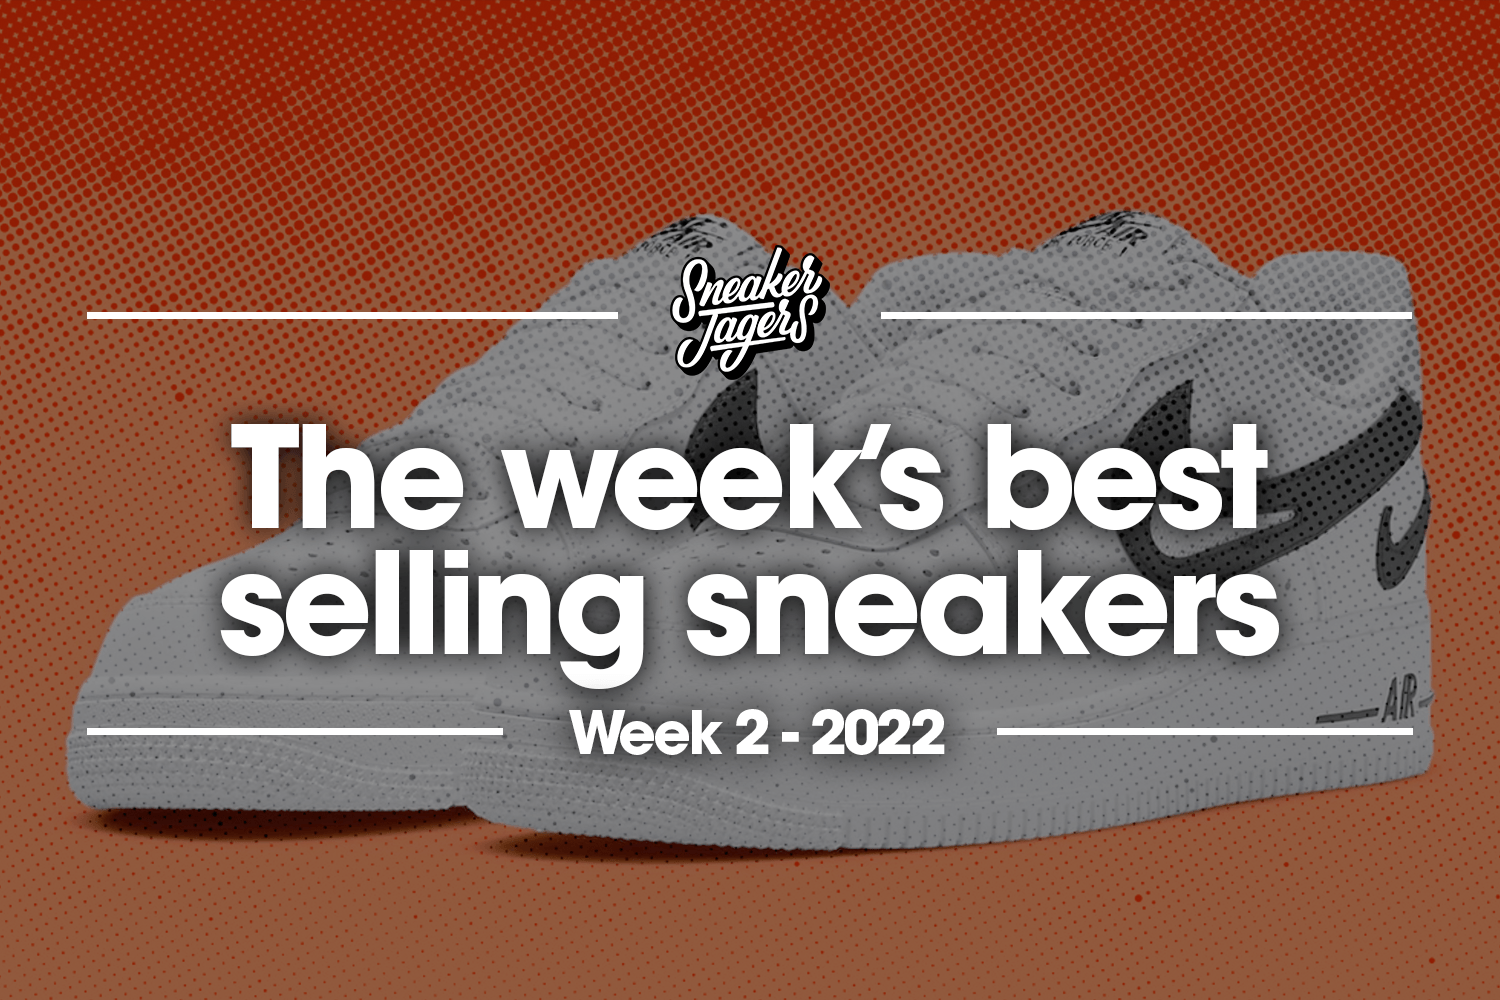 The 5 best-selling sneakers of week 2